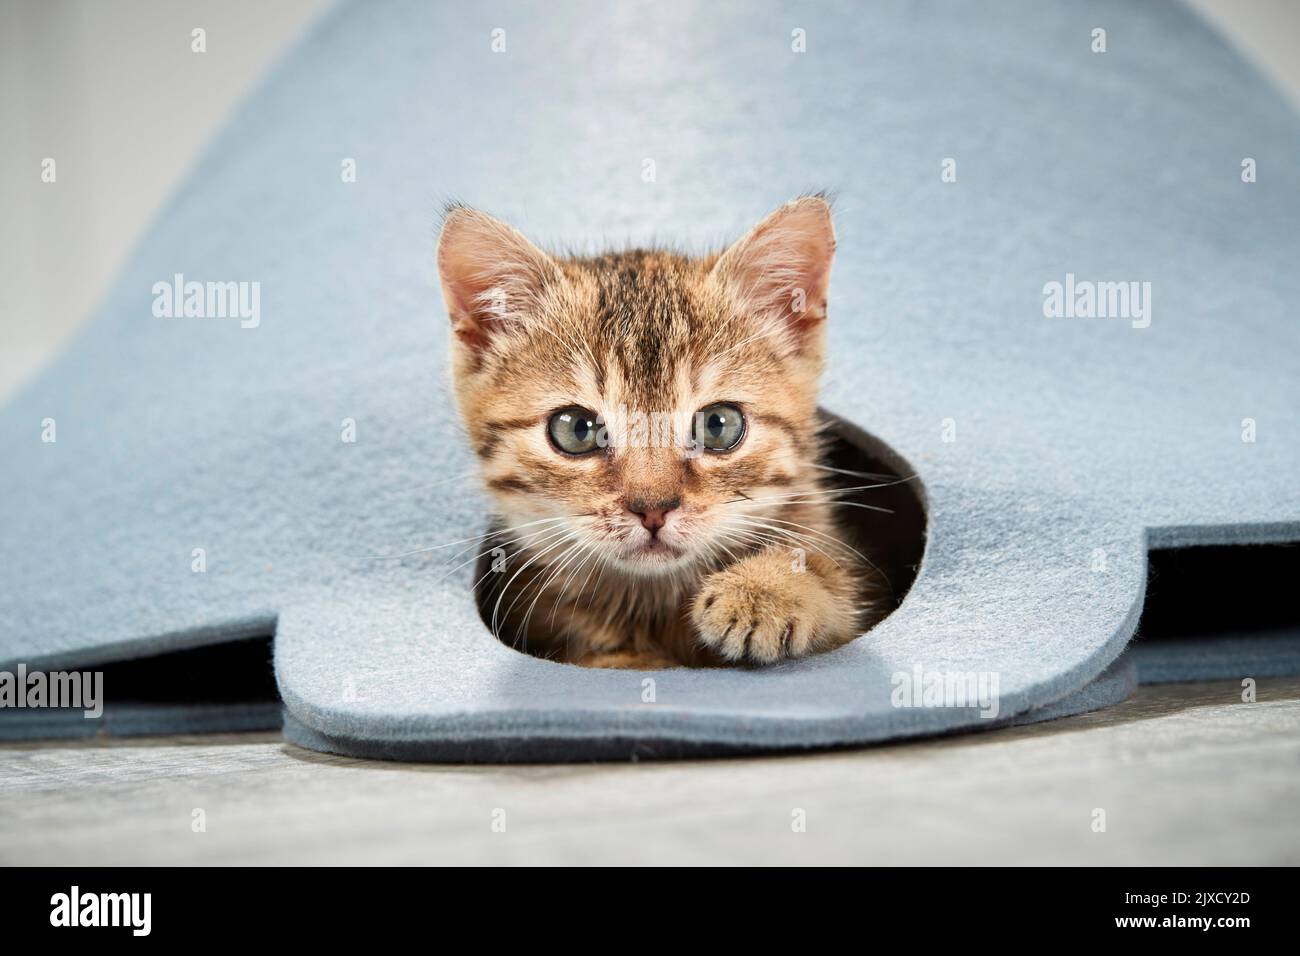 Gato doméstico. Un gatito tabby mira fuera de una bolsa de fieltro. Alemania Foto de stock